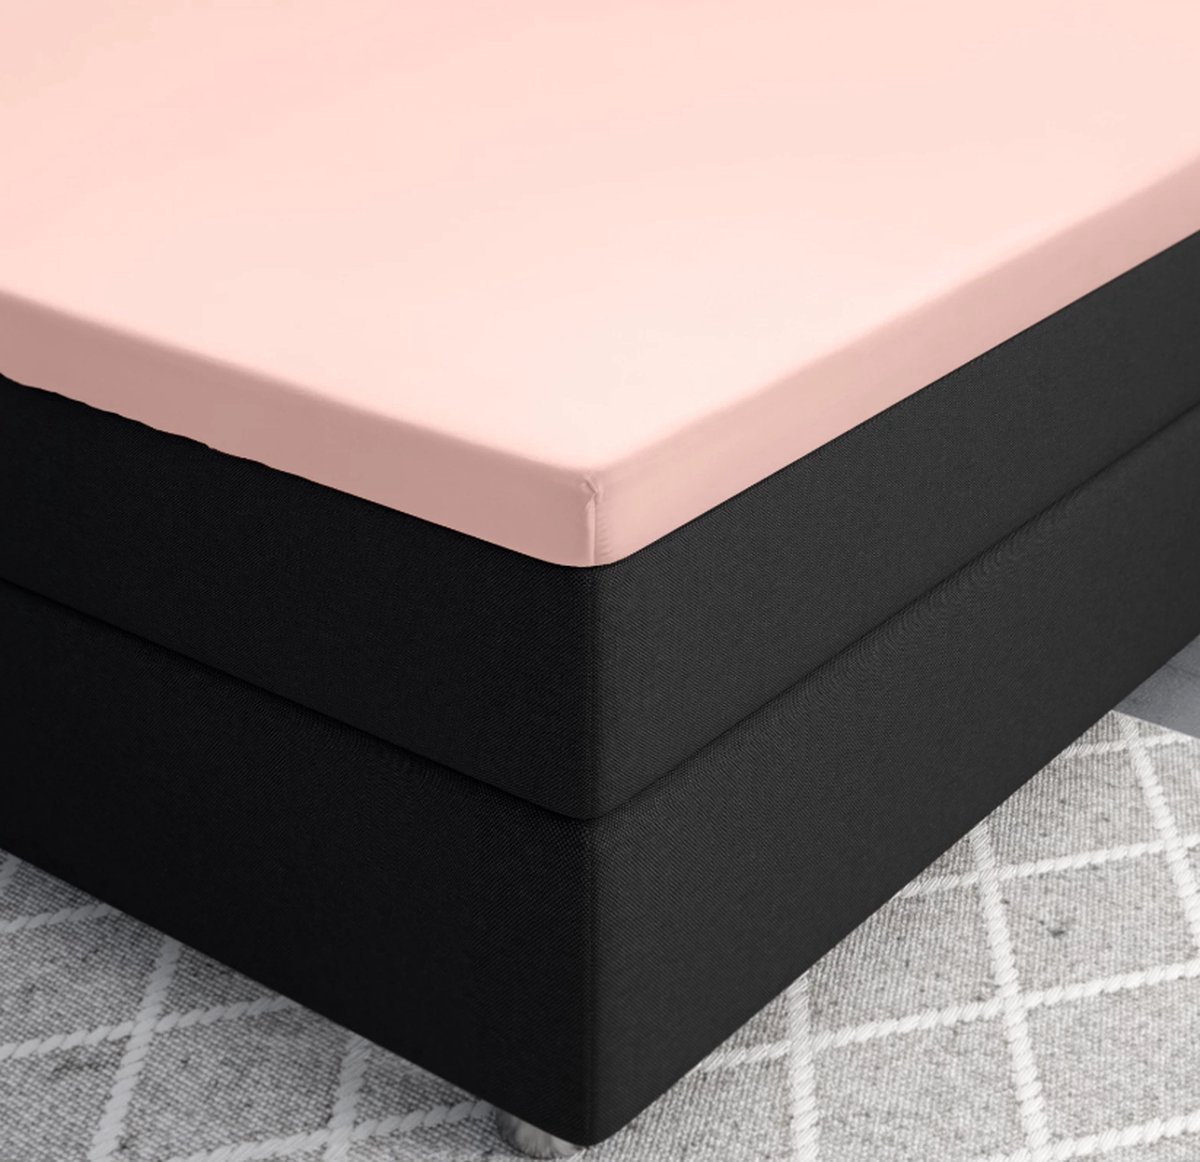 Premium katoen/satijn hoeslaken roze - 160x200 (lits-jumeaux) - zacht en ademend - luxe en chique uitstraling - subtiele glans - ideale pasvorm